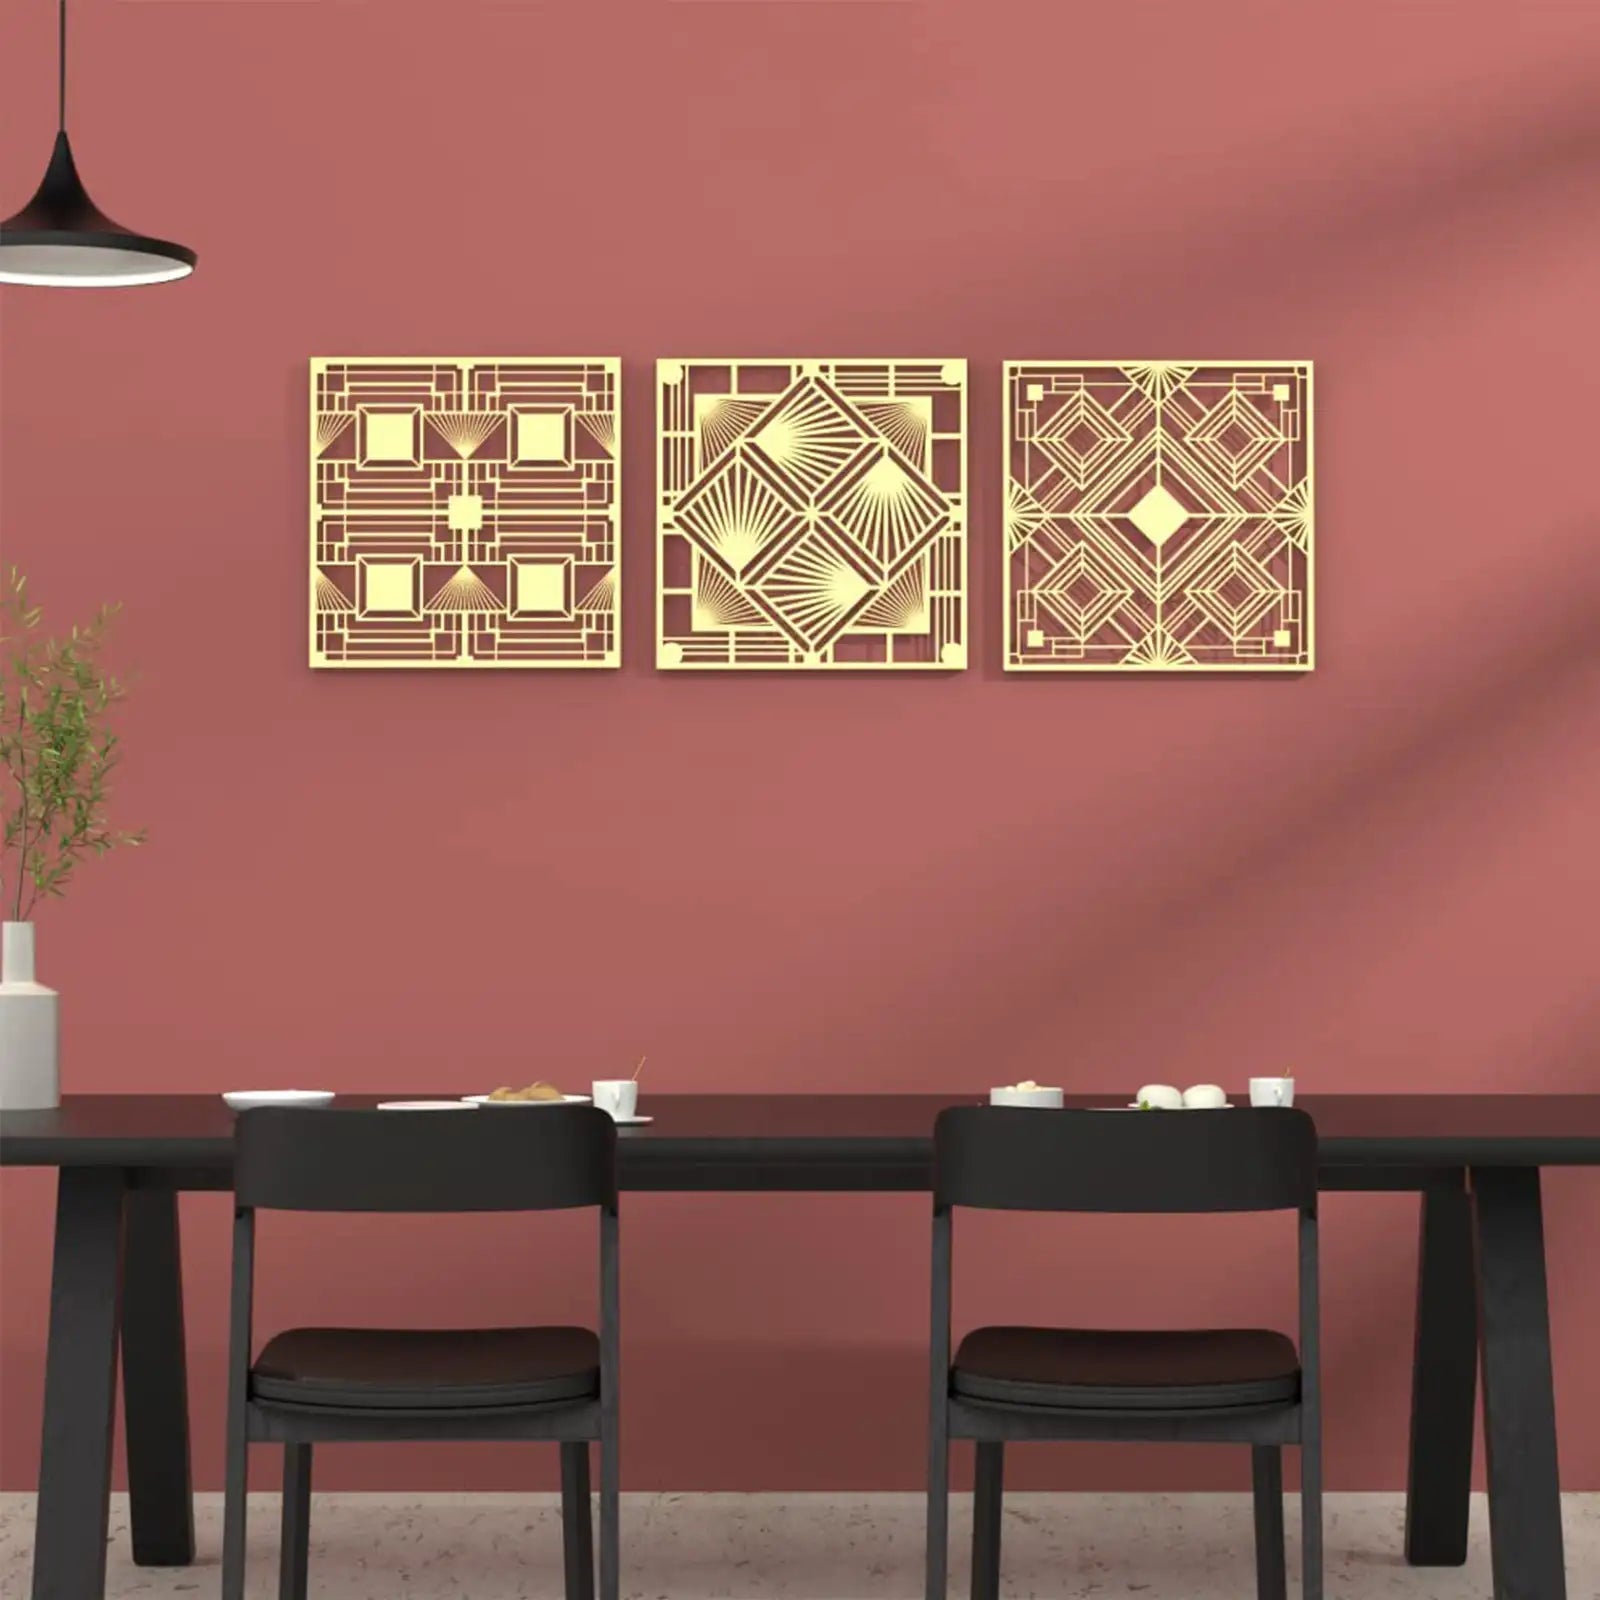 Juego de 3, arte de pared de metal con geometría sagrada de 12 pulgadas, decoración para colgar en la pared con forma geométrica abstracta moderna, esculturas de pared cuadradas doradas para decoración de habitación Zen de meditación y yoga 